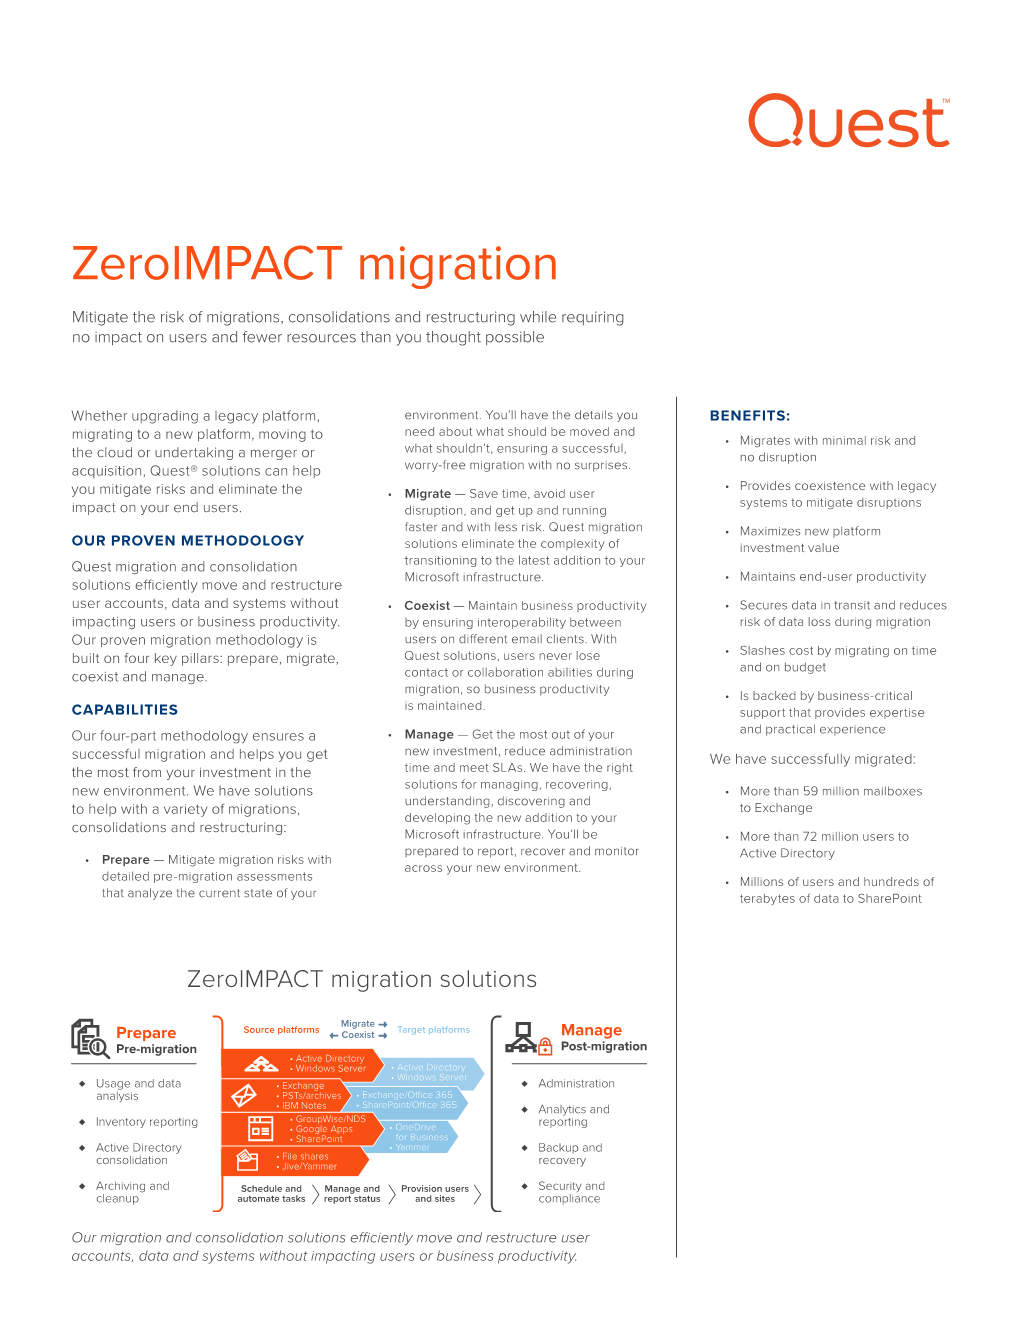 Zeroimpact Migration Solutions Overview